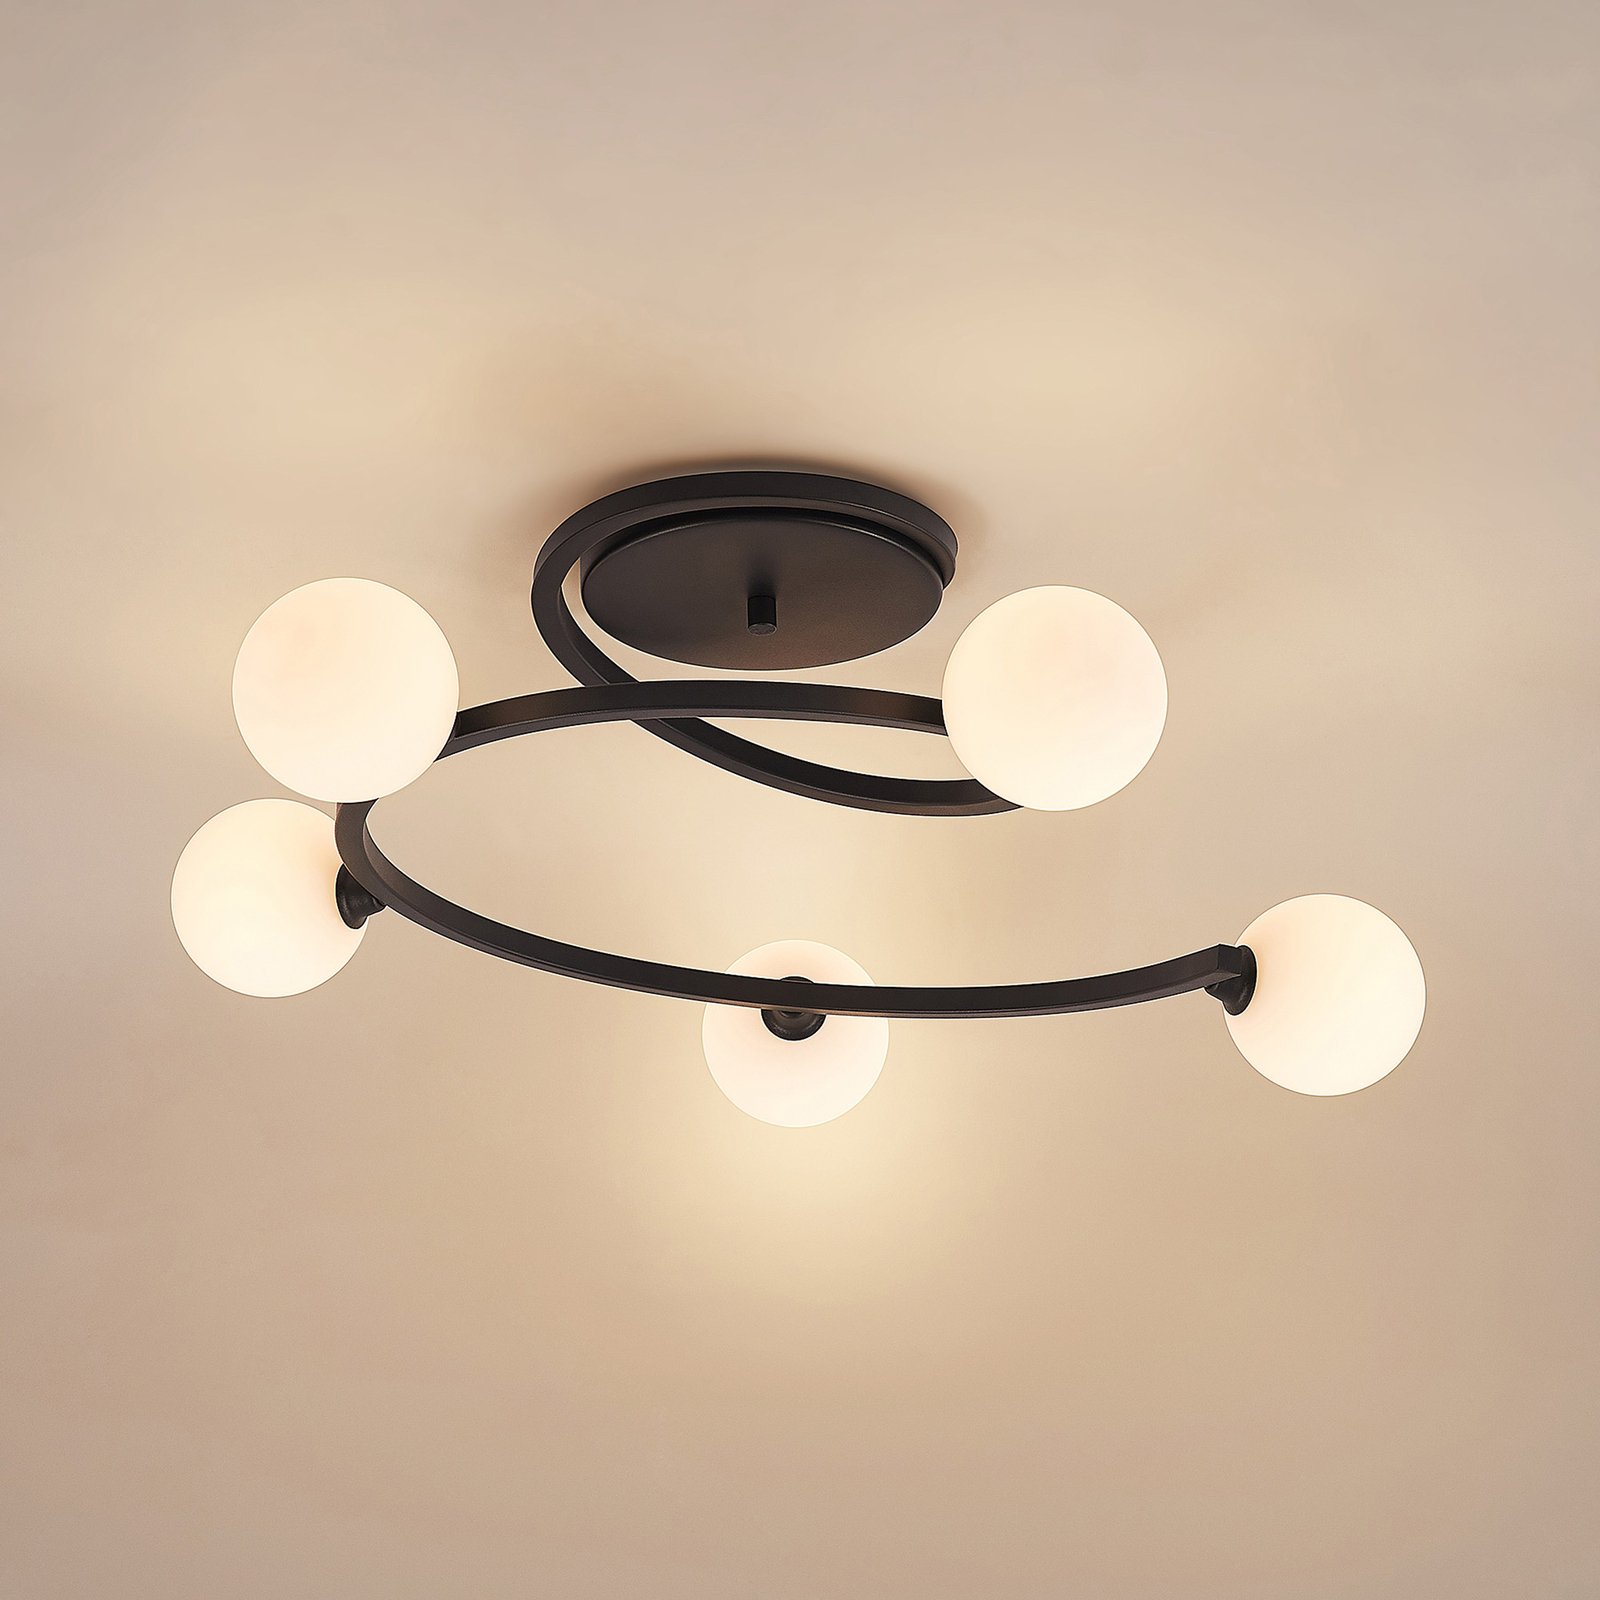 Lucande Chenoa stropní světlo ve spirálovém tvaru